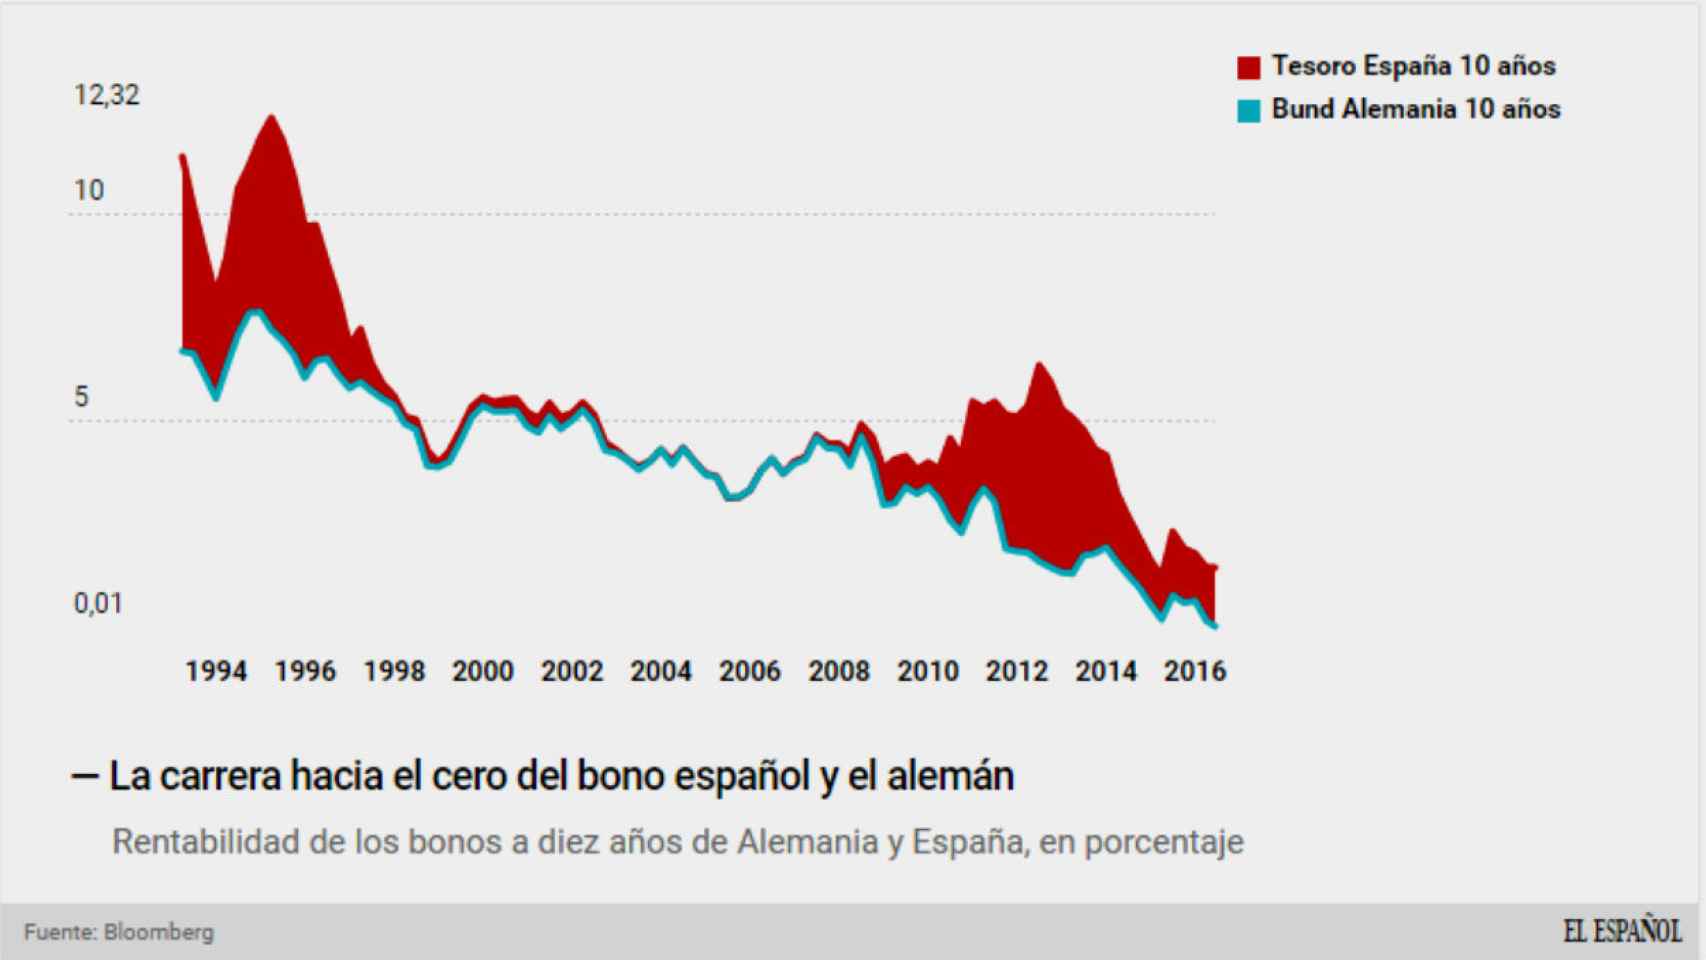 Rentabilidad de los bonos del estado alemán y español.